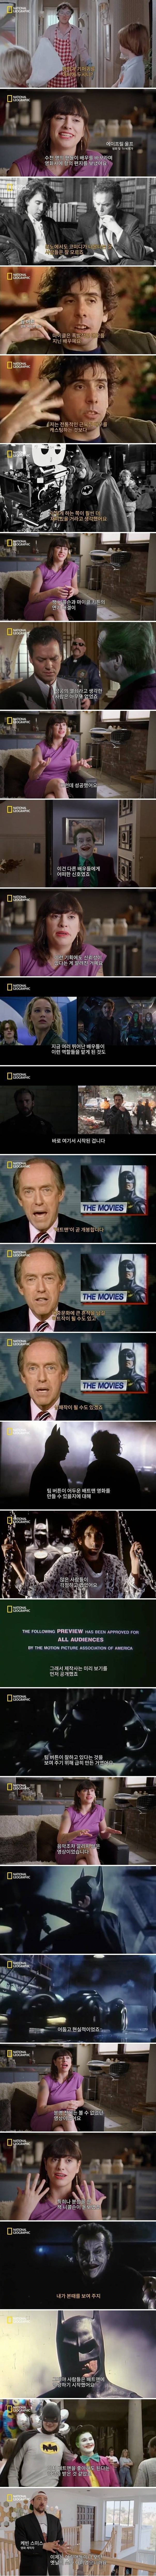 팀버튼의 배트맨이 영화계에 미친 영향력